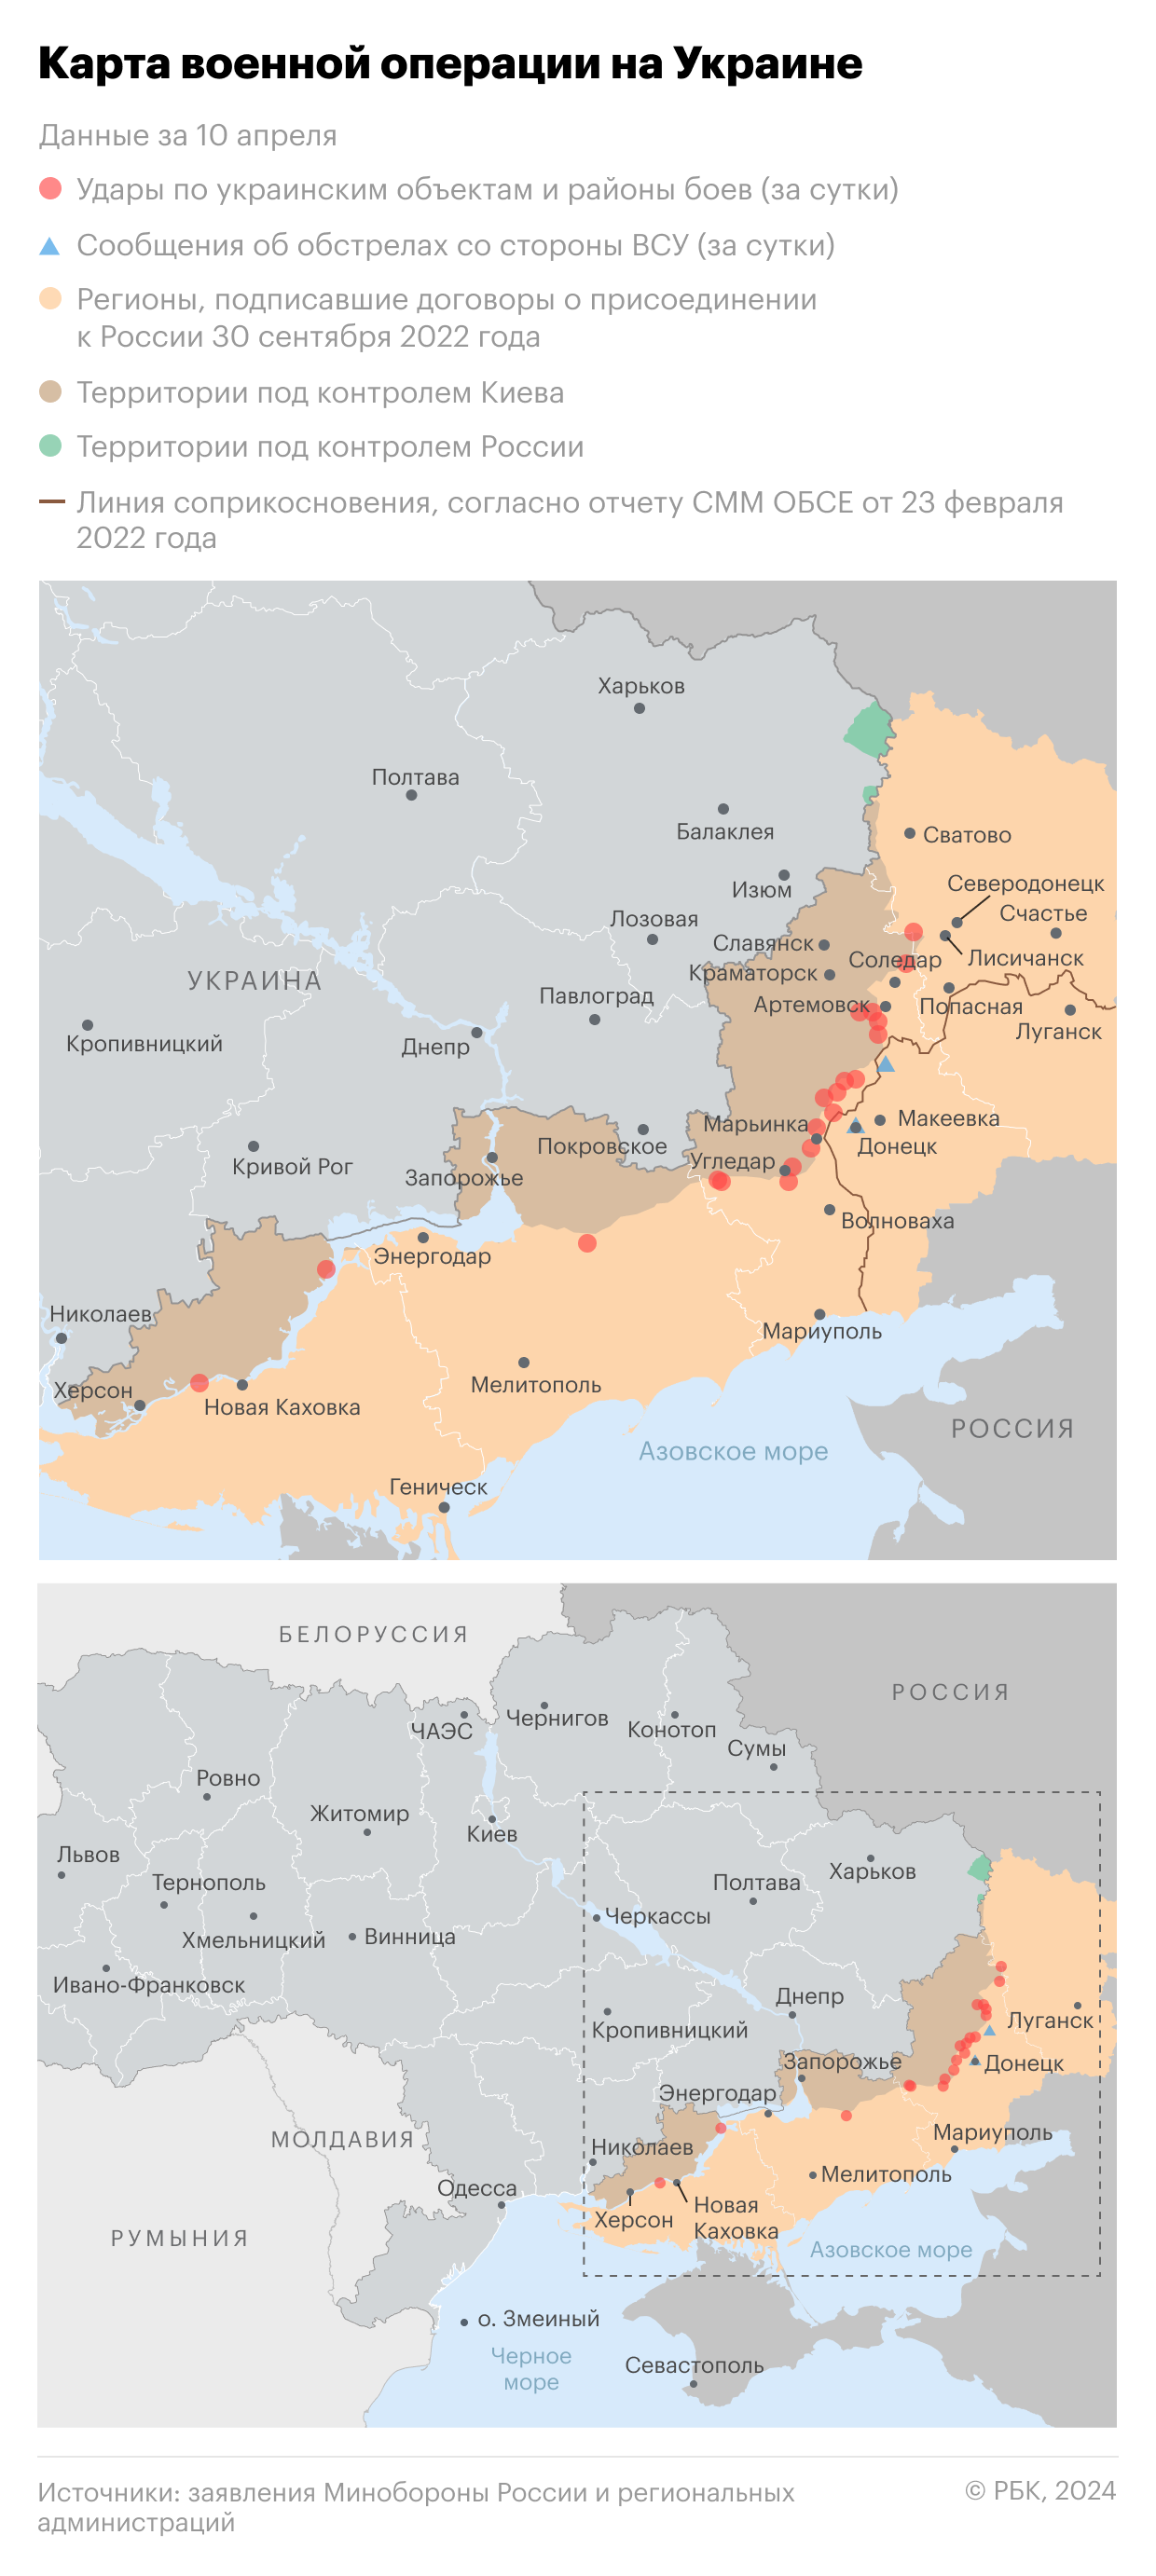 Военная операция на Украине. Карта на 10 апреля